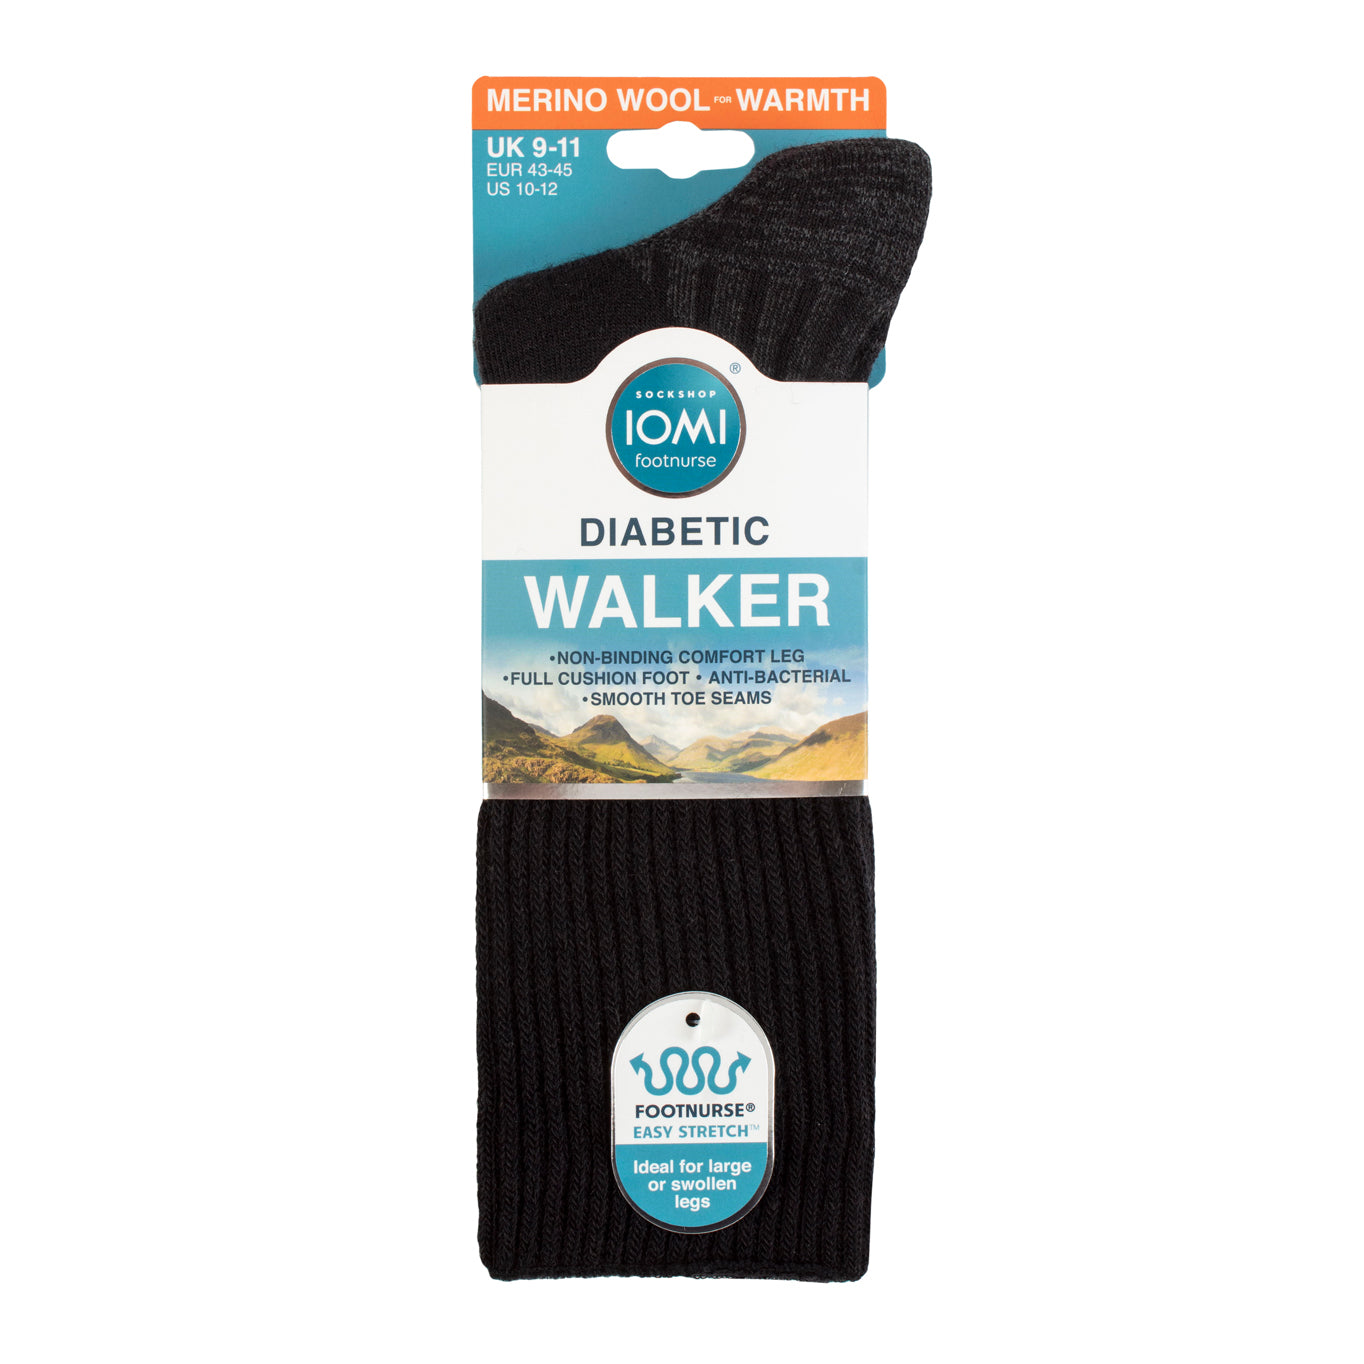 1 Pair IOMI FootNurse Diabetic Walker Wool Boot Socks Black